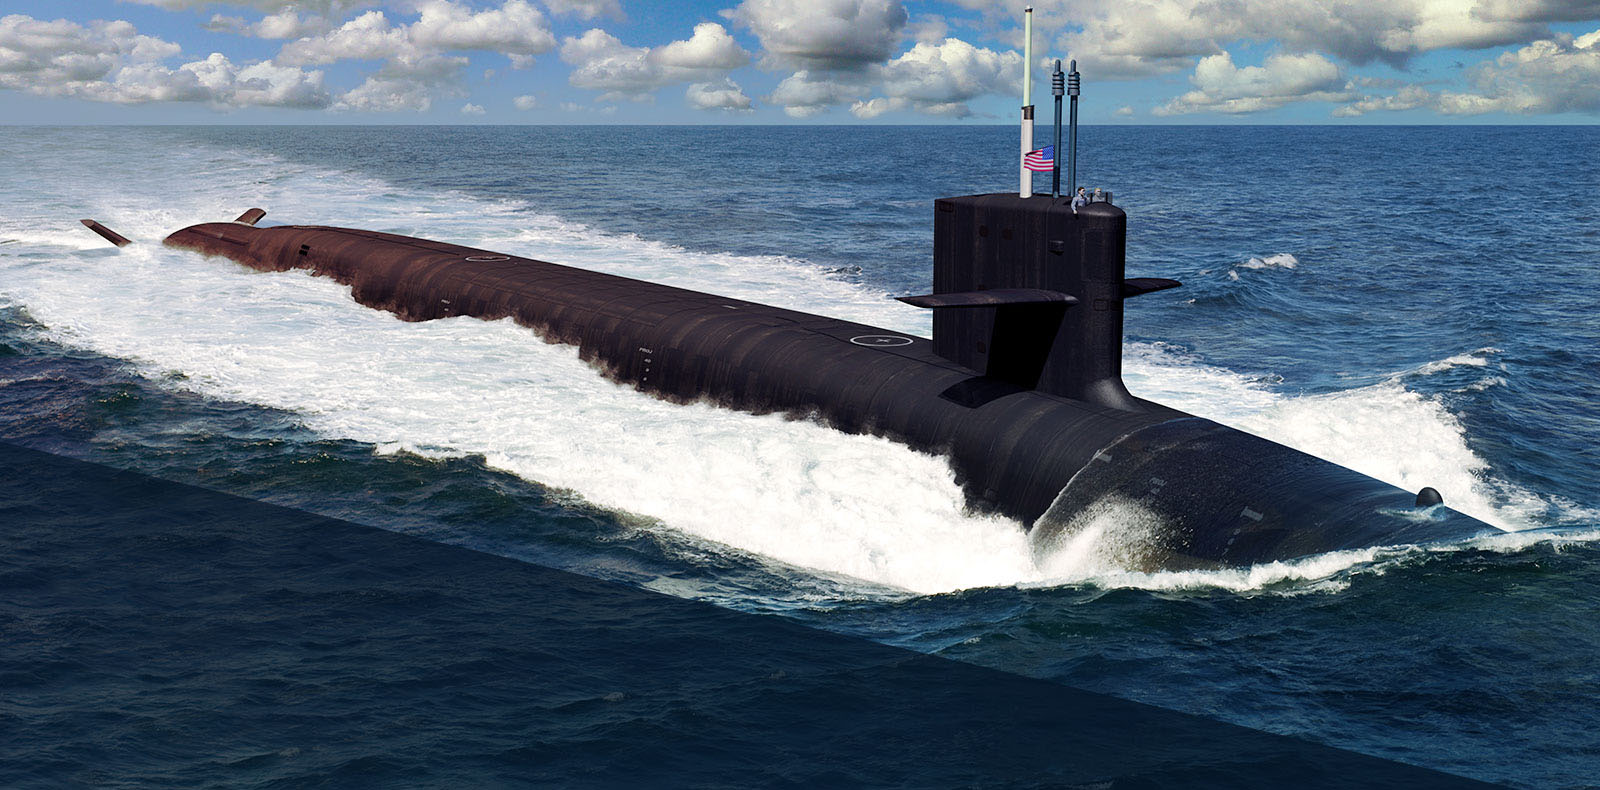 Подводная лодка типа "Колумбия" (компьютерная графика) Фото © Wikipedia